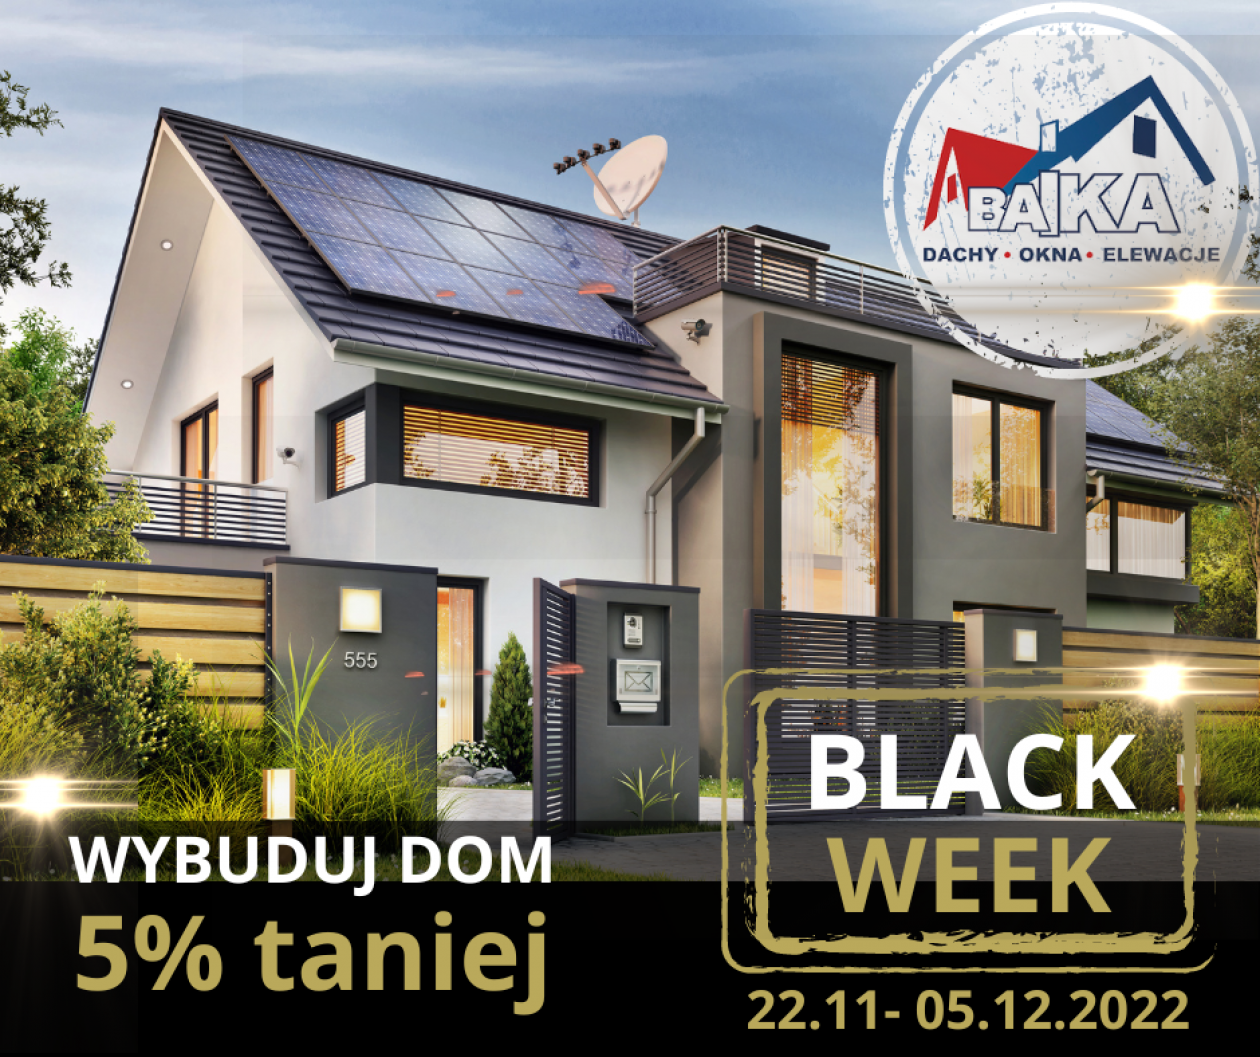 BLACK WEEK w BAiKA – Dachy, Okna, Elewacje trwa aż 2- tygodnie!